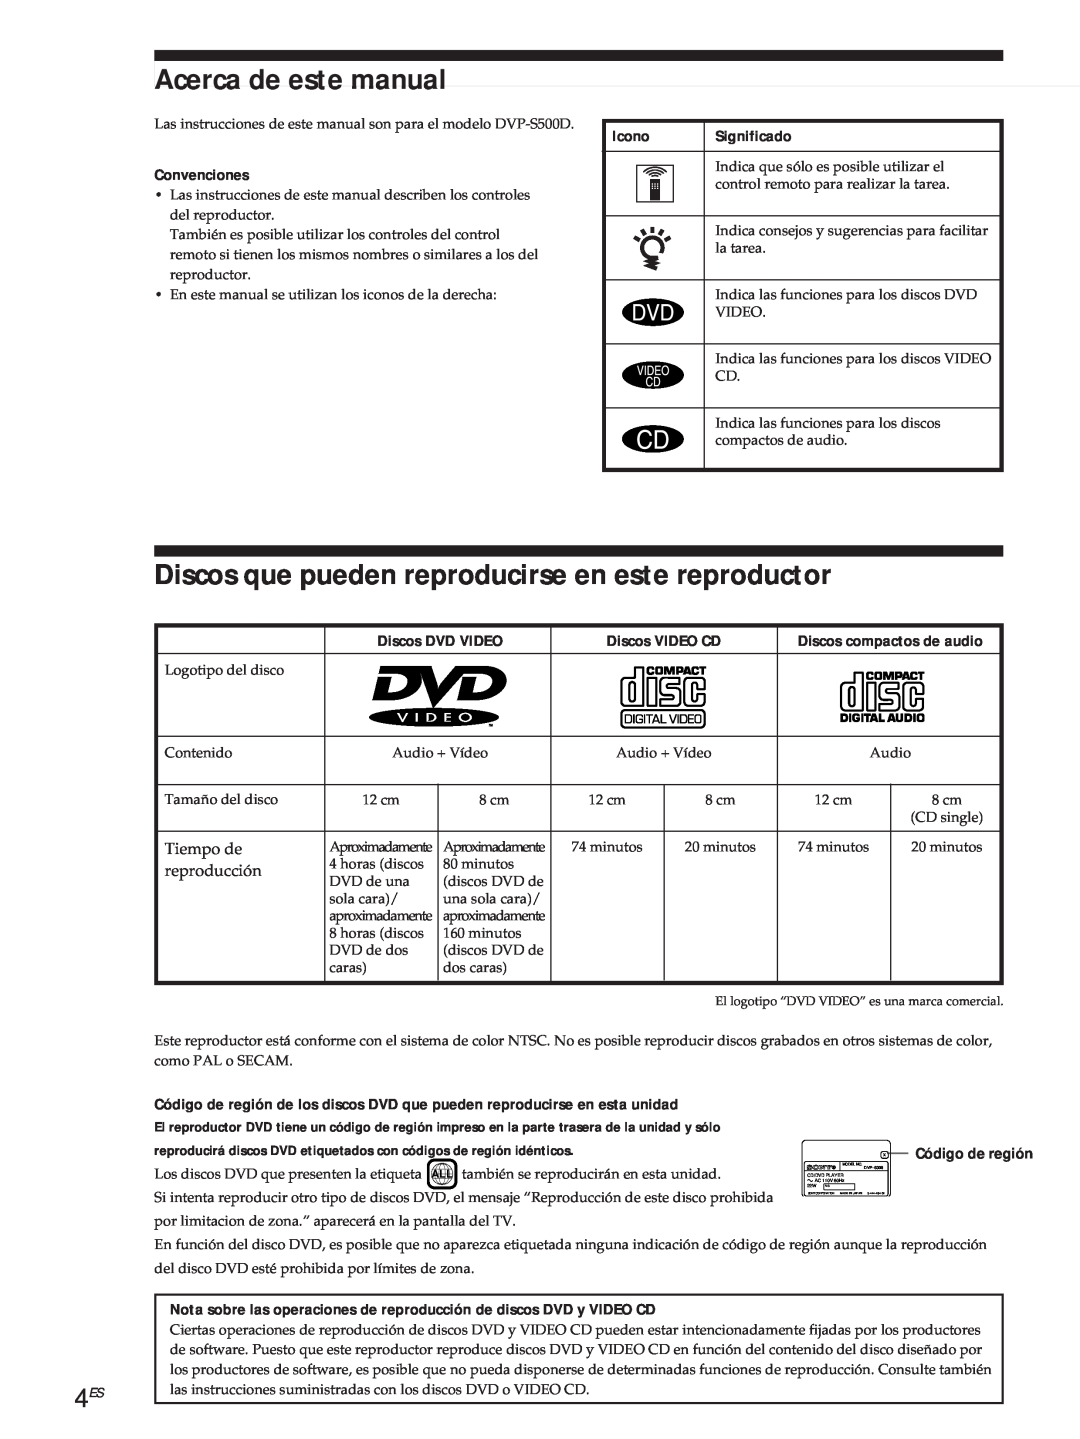 Sony DVP-S500D Acerca de este manual, Discos que pueden reproducirse en este reproductor, Procedimientos iniciales, Icono 